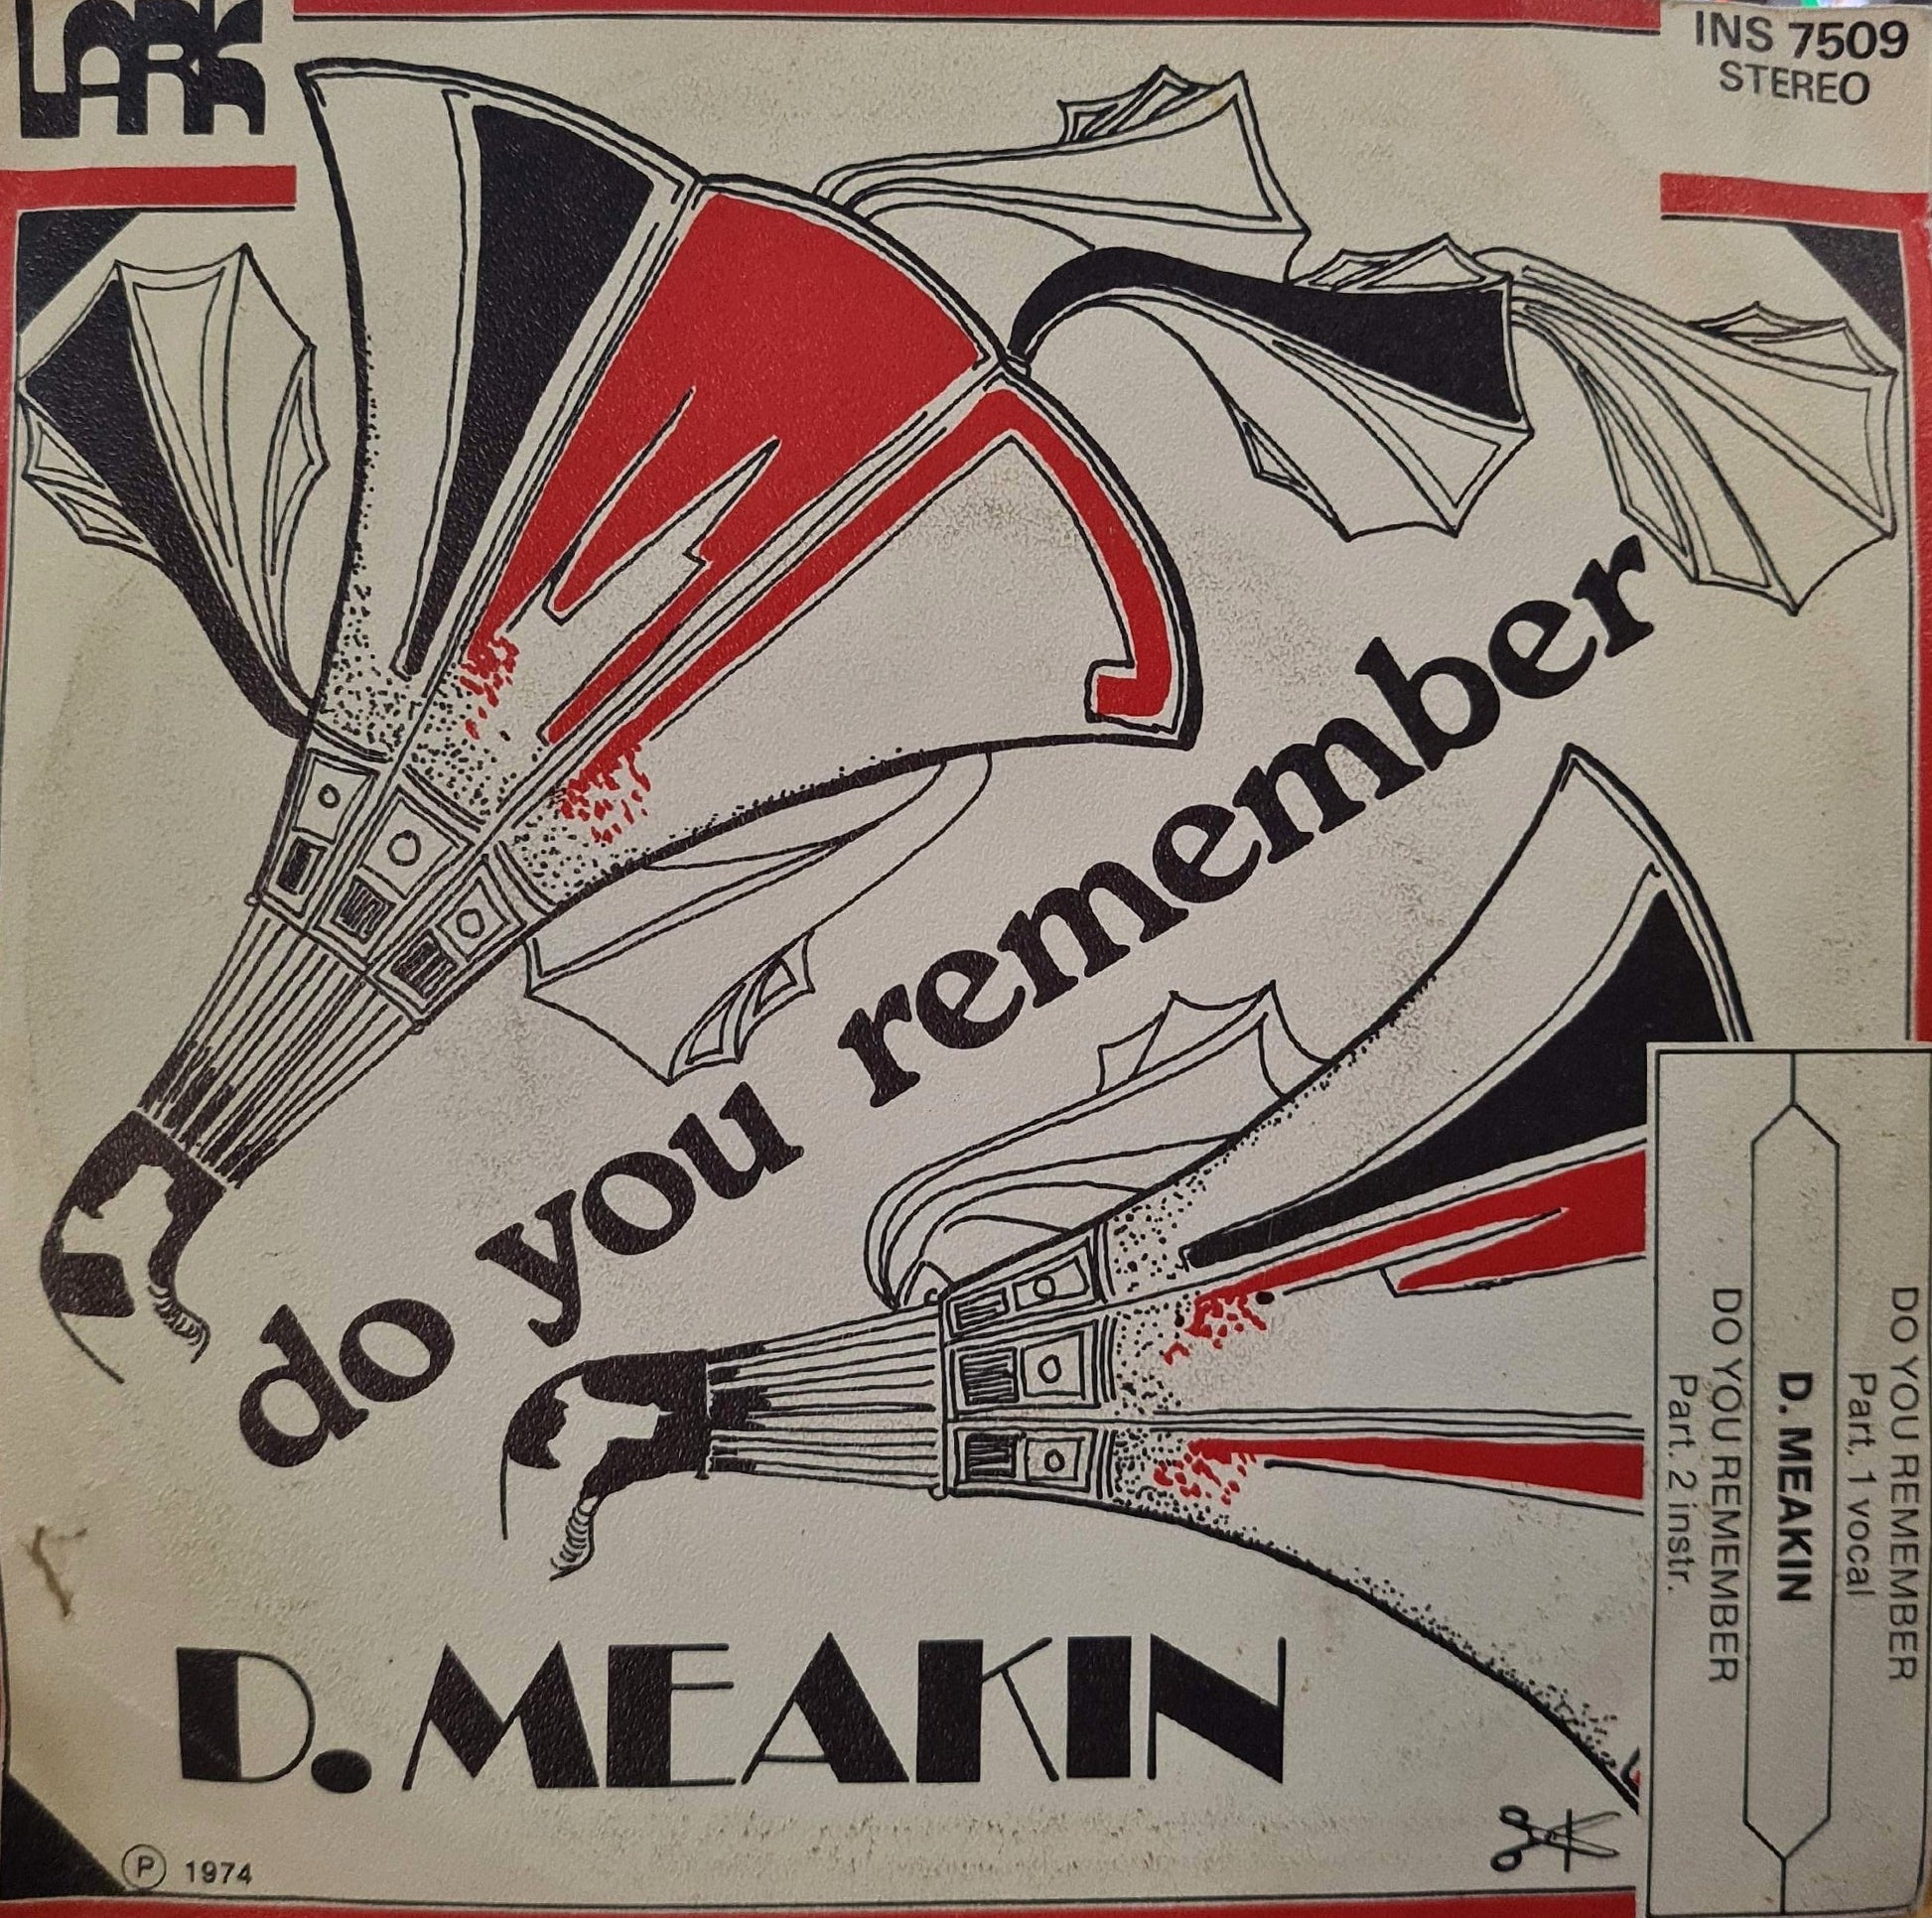 D.Meakin - Do You Remember 11747 Vinyl Singles VINYLSINGLES.NL